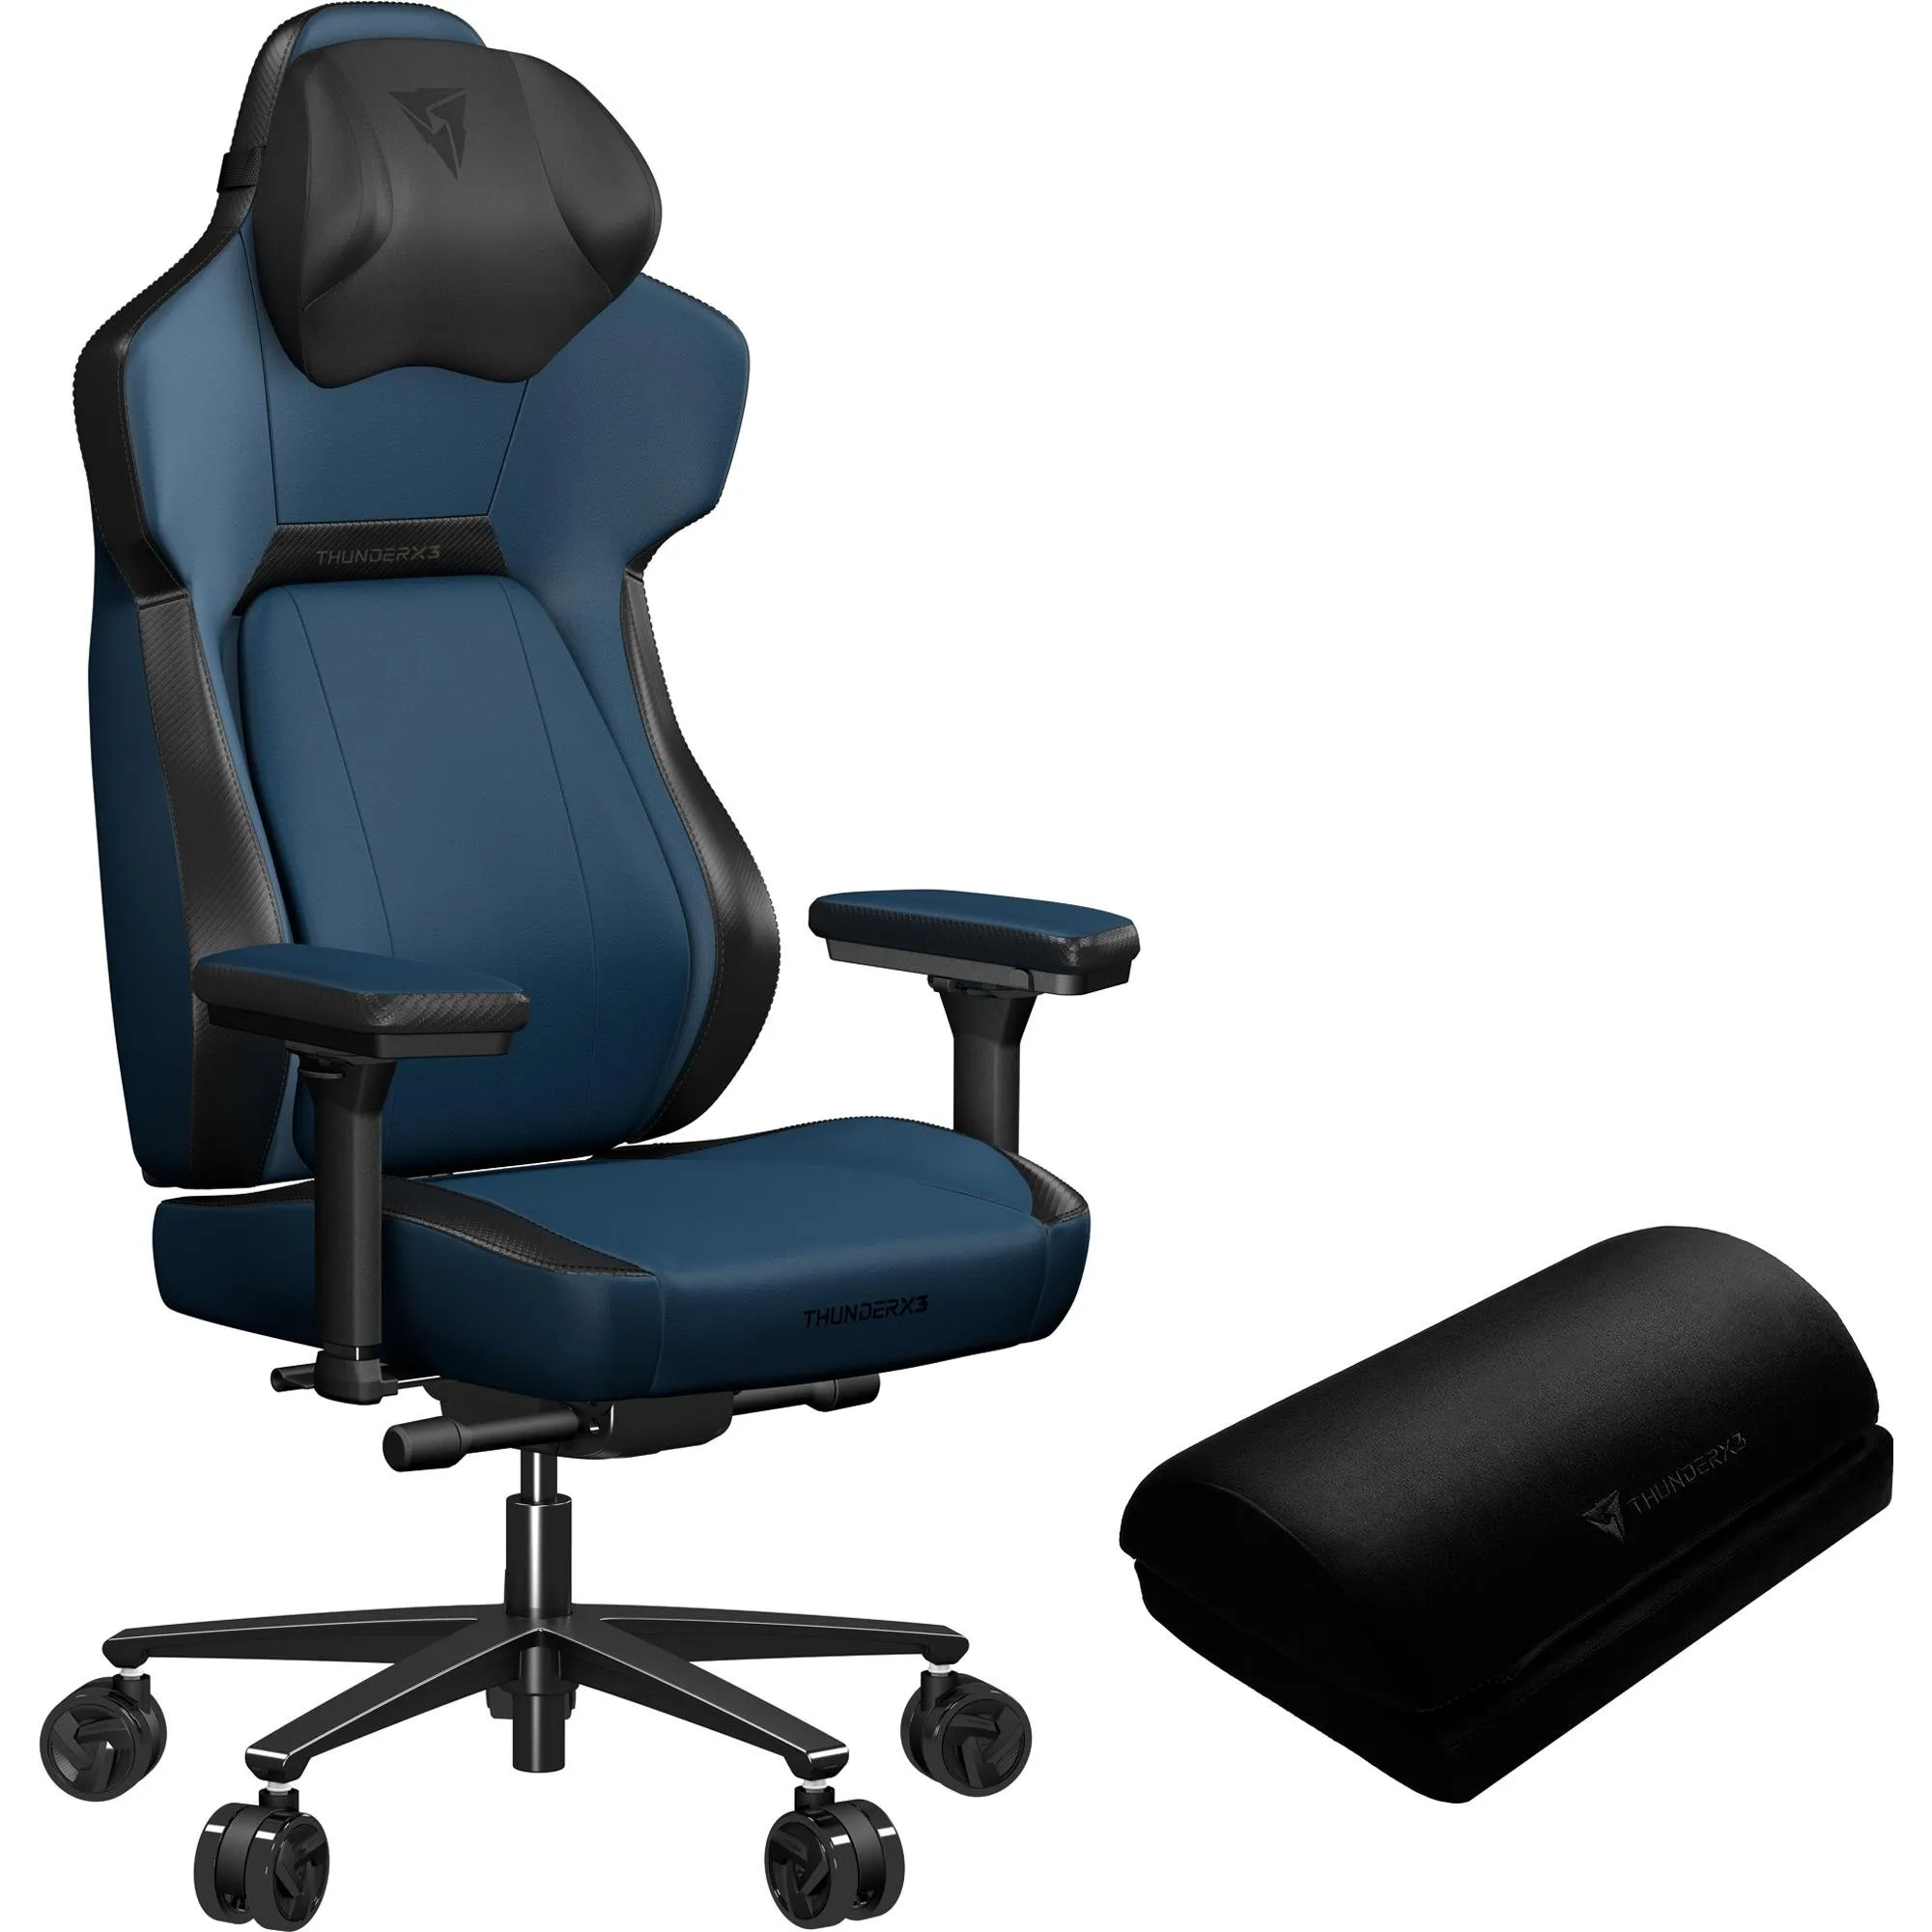 Cadeira Gamer ThunderX3 CORE Modern Azul por 3.099,90 à vista no boleto/pix ou parcele em até 12x sem juros. Compre na loja Thunderx3!